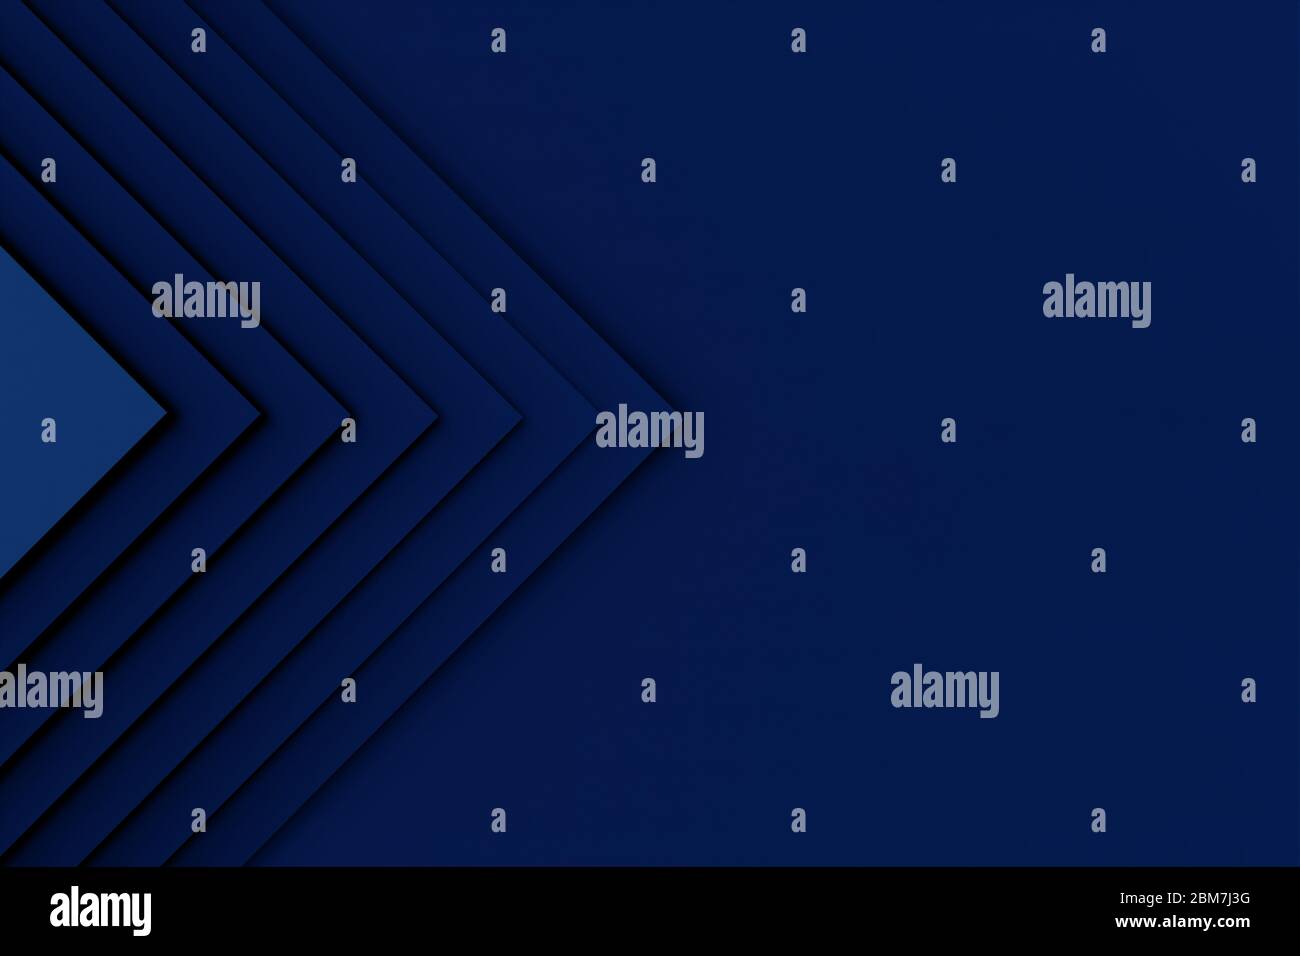 Abstrakt Blau Schritt Papier Textur Hintergrund. Minimal klassisch blau geometrische Draufsicht einfache Kopie Platz für Hintergrunddesign, 3d-Illustration, Stockfoto